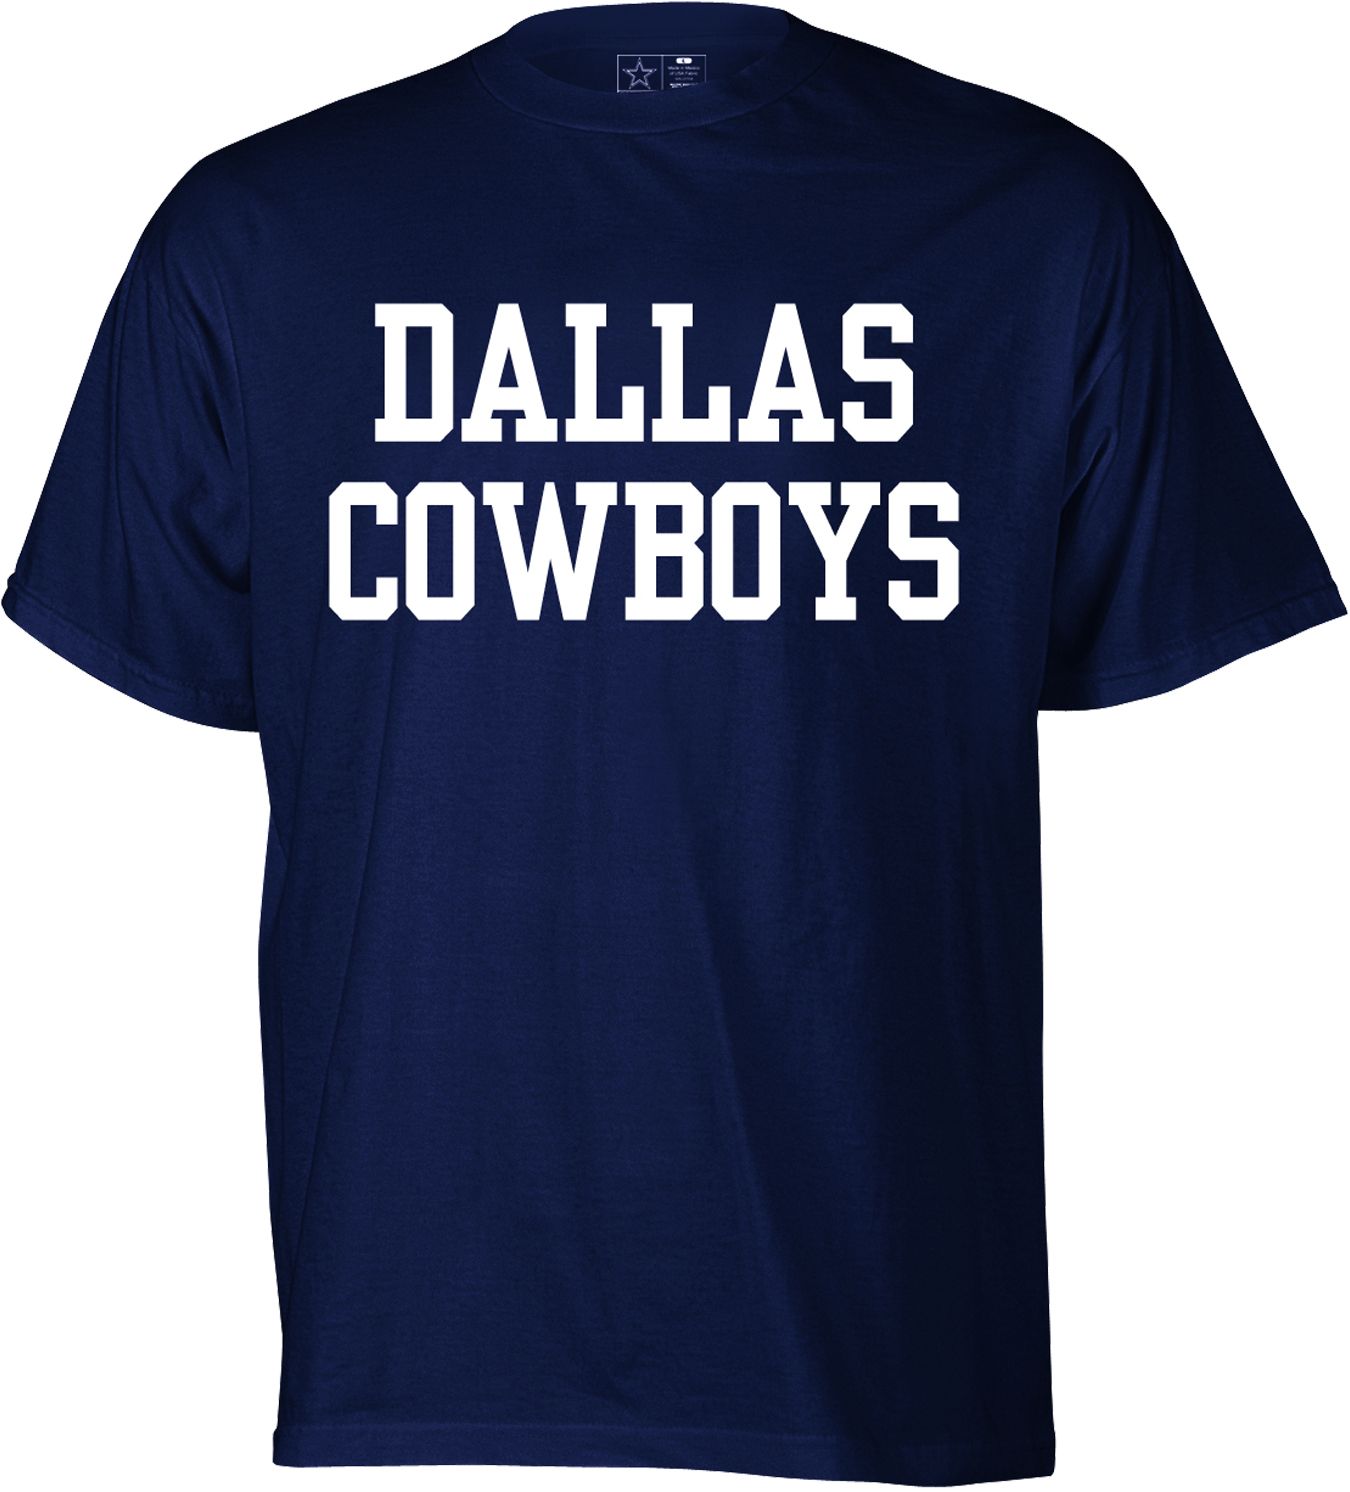 Dallas Cowboys Merchandising Men's Navy 